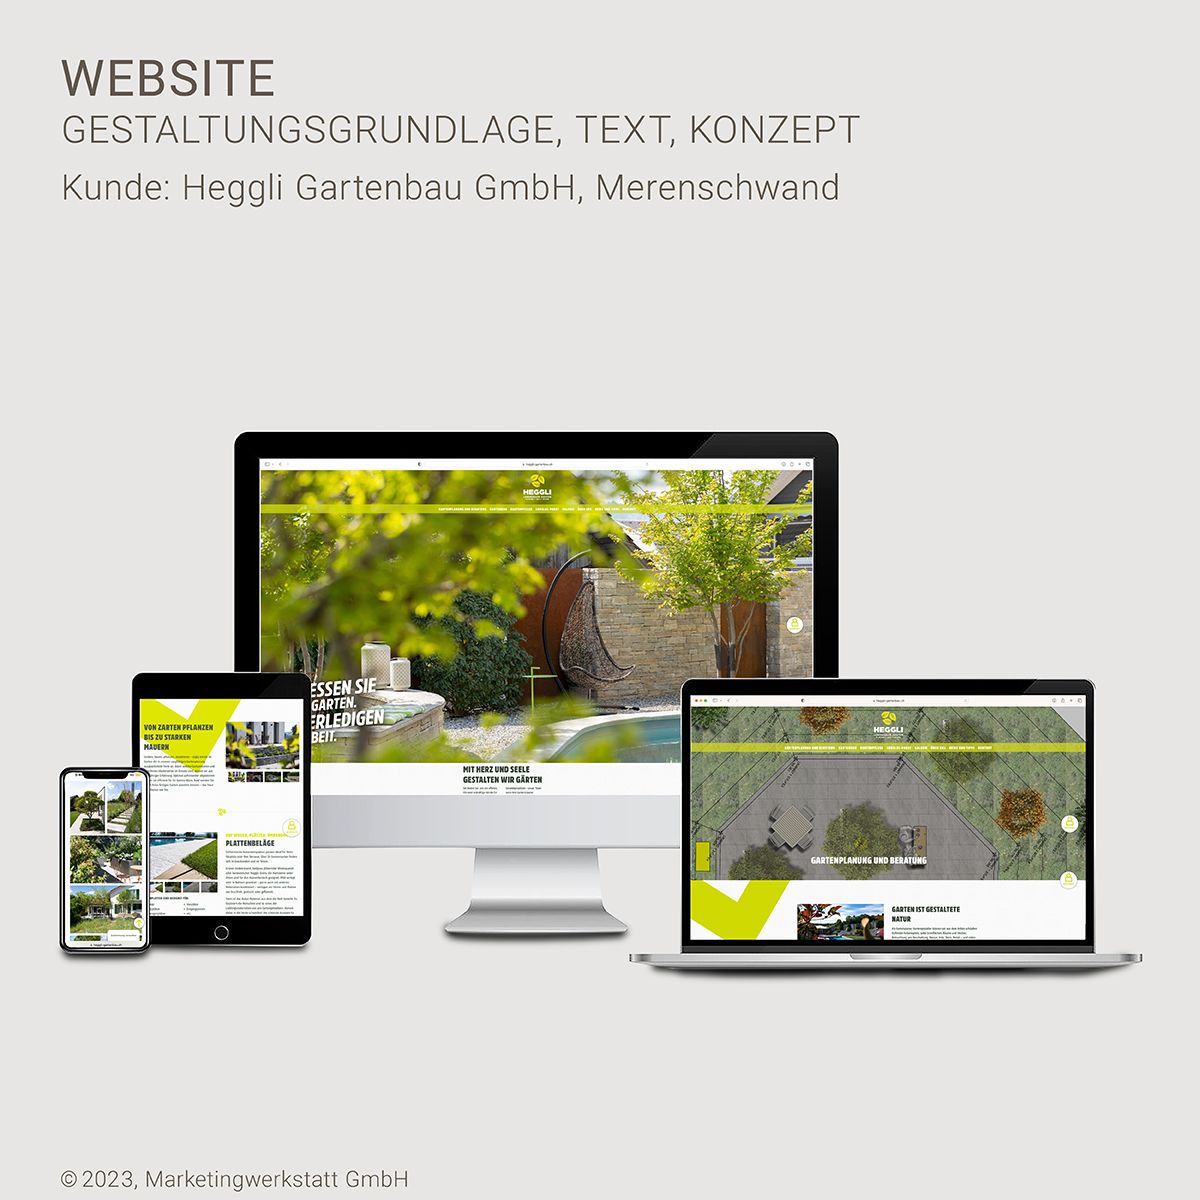 WEB1_MW_Website_Heggli-Gartenbau-09-2023.jpg